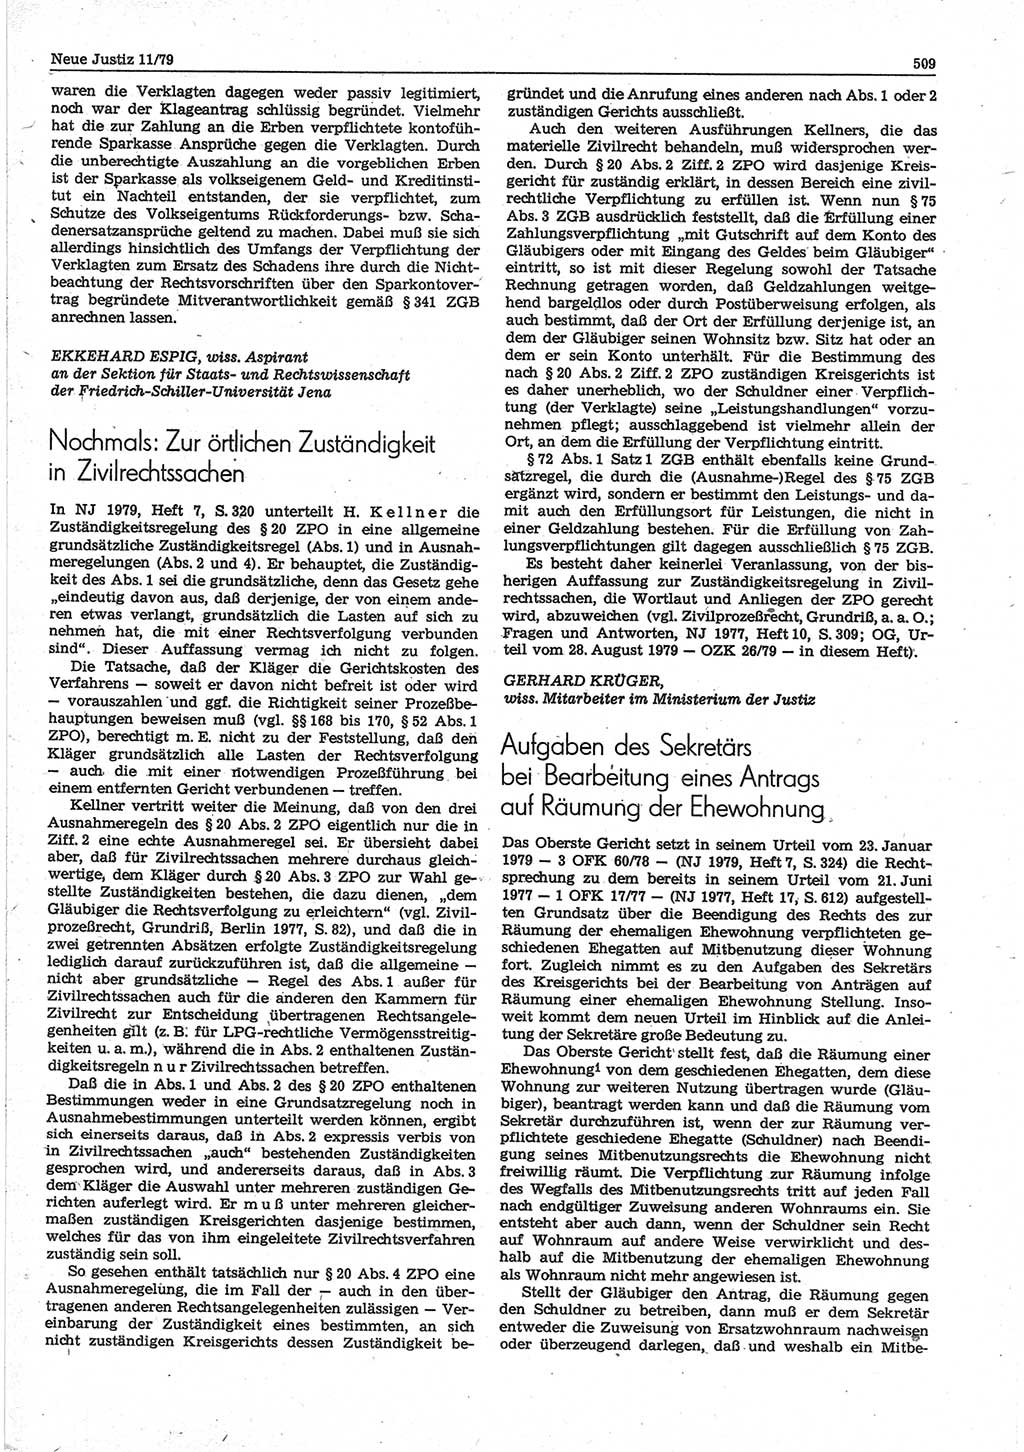 Neue Justiz (NJ), Zeitschrift für sozialistisches Recht und Gesetzlichkeit [Deutsche Demokratische Republik (DDR)], 33. Jahrgang 1979, Seite 509 (NJ DDR 1979, S. 509)